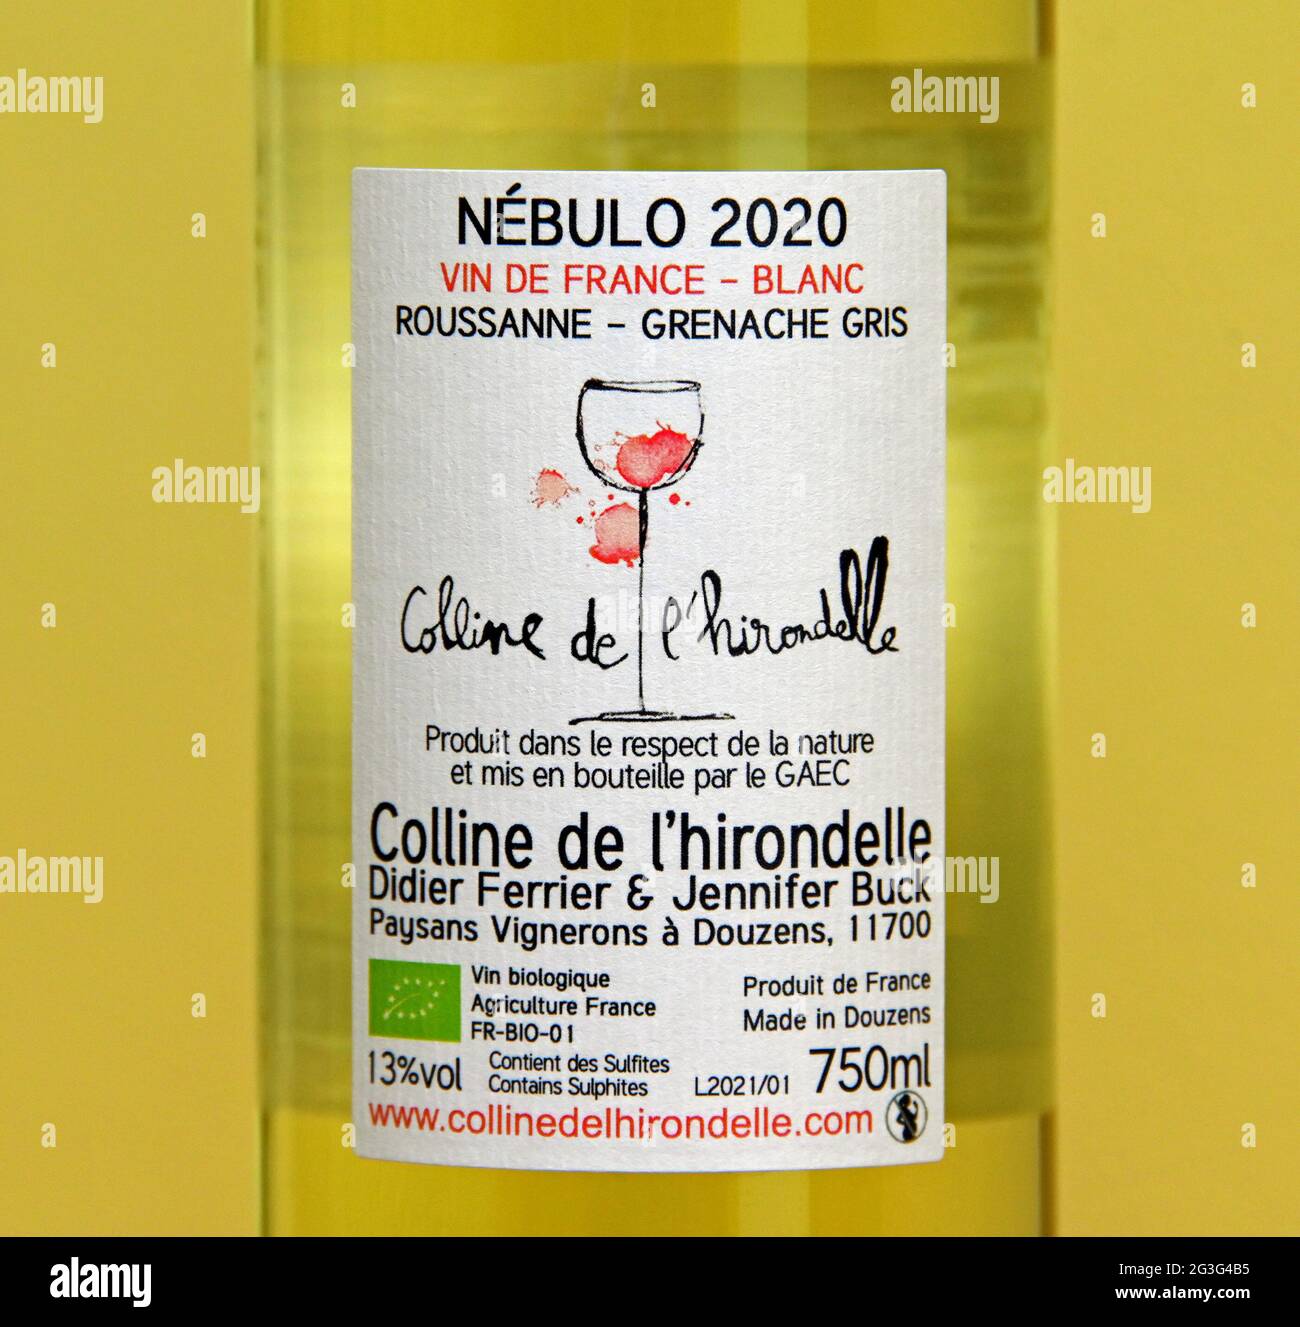 Wine label. Nebulo 2020. Colline de l'hirondelle. Vin de France-Blanc. Roussanne-Grenache Gris. Didier Ferrier & Jennifer Buck. Stock Photo